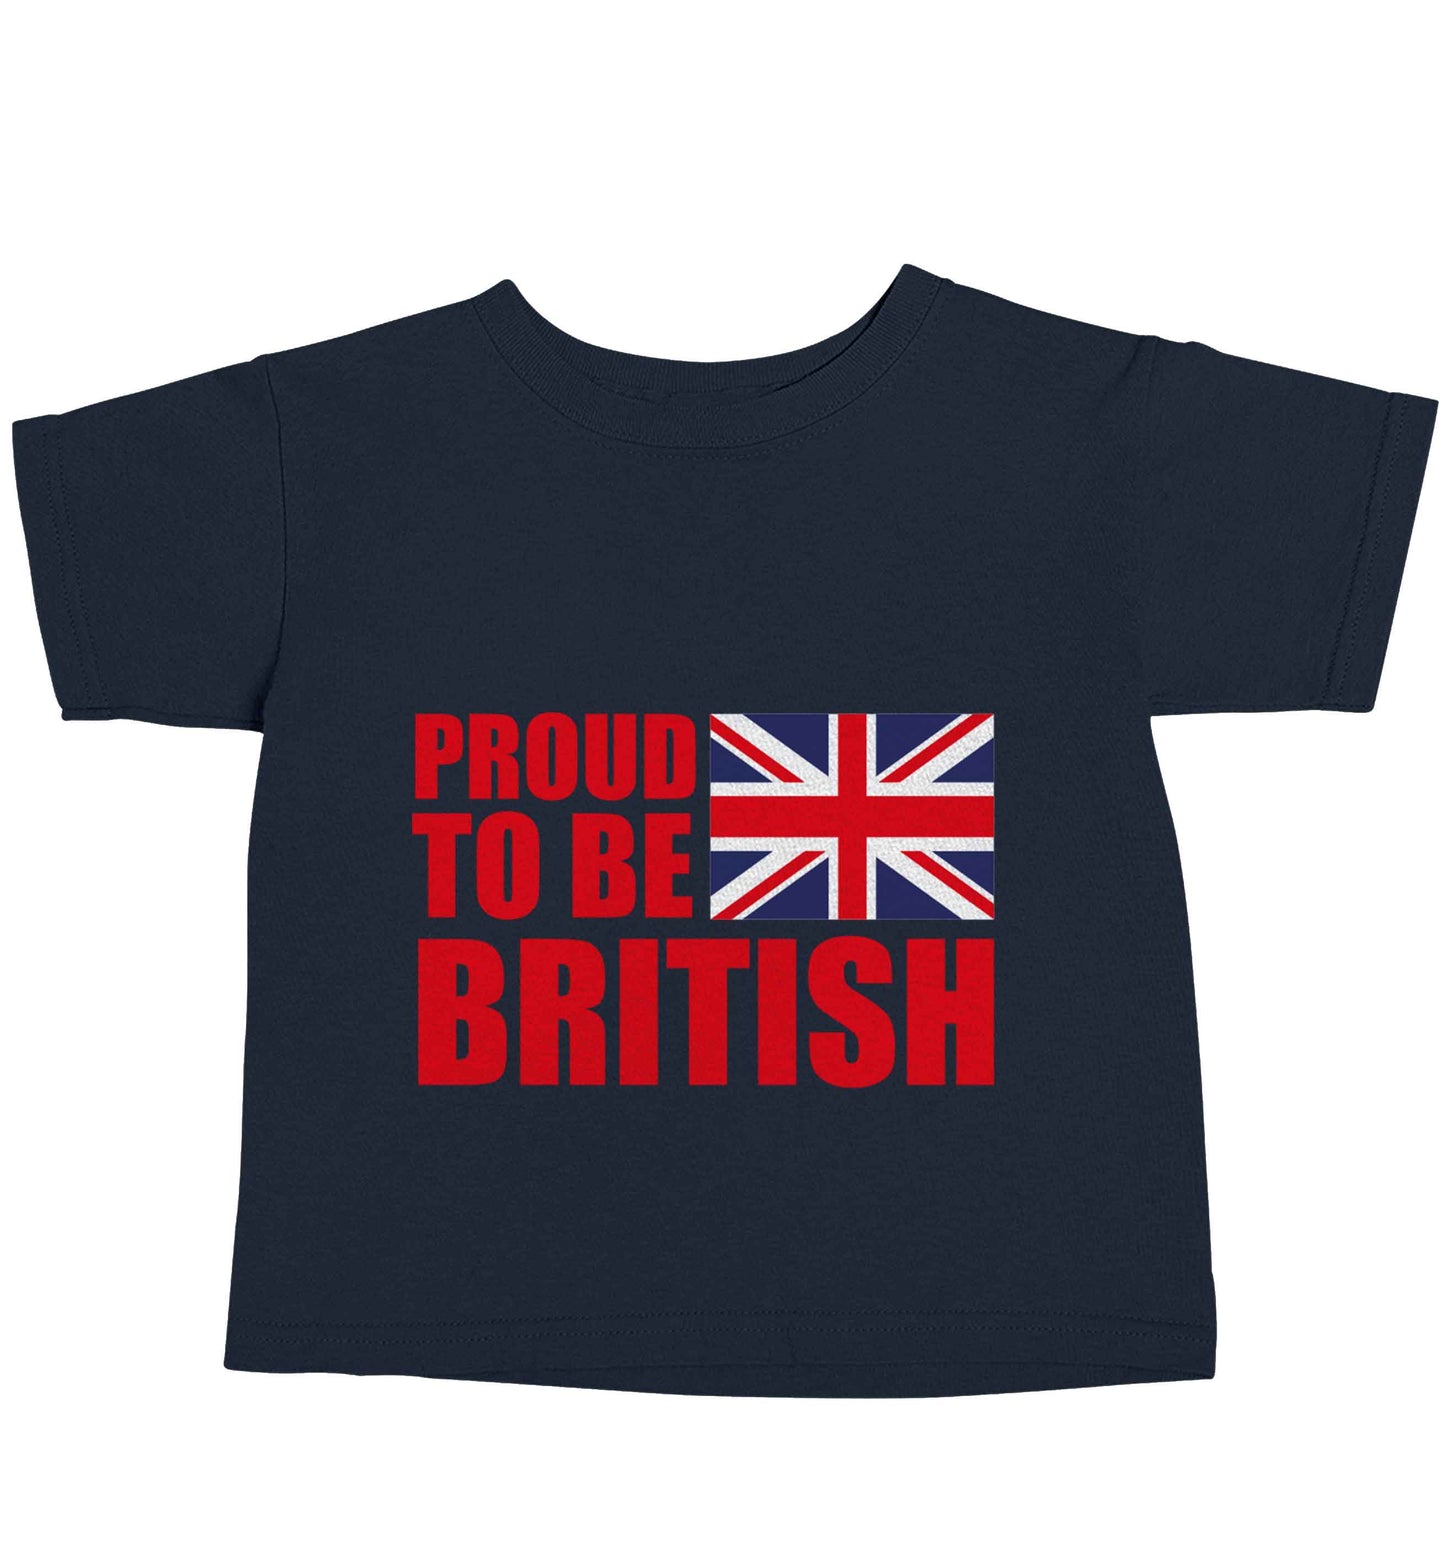 Proud to be British navy baby toddler Tshirt 2 Years